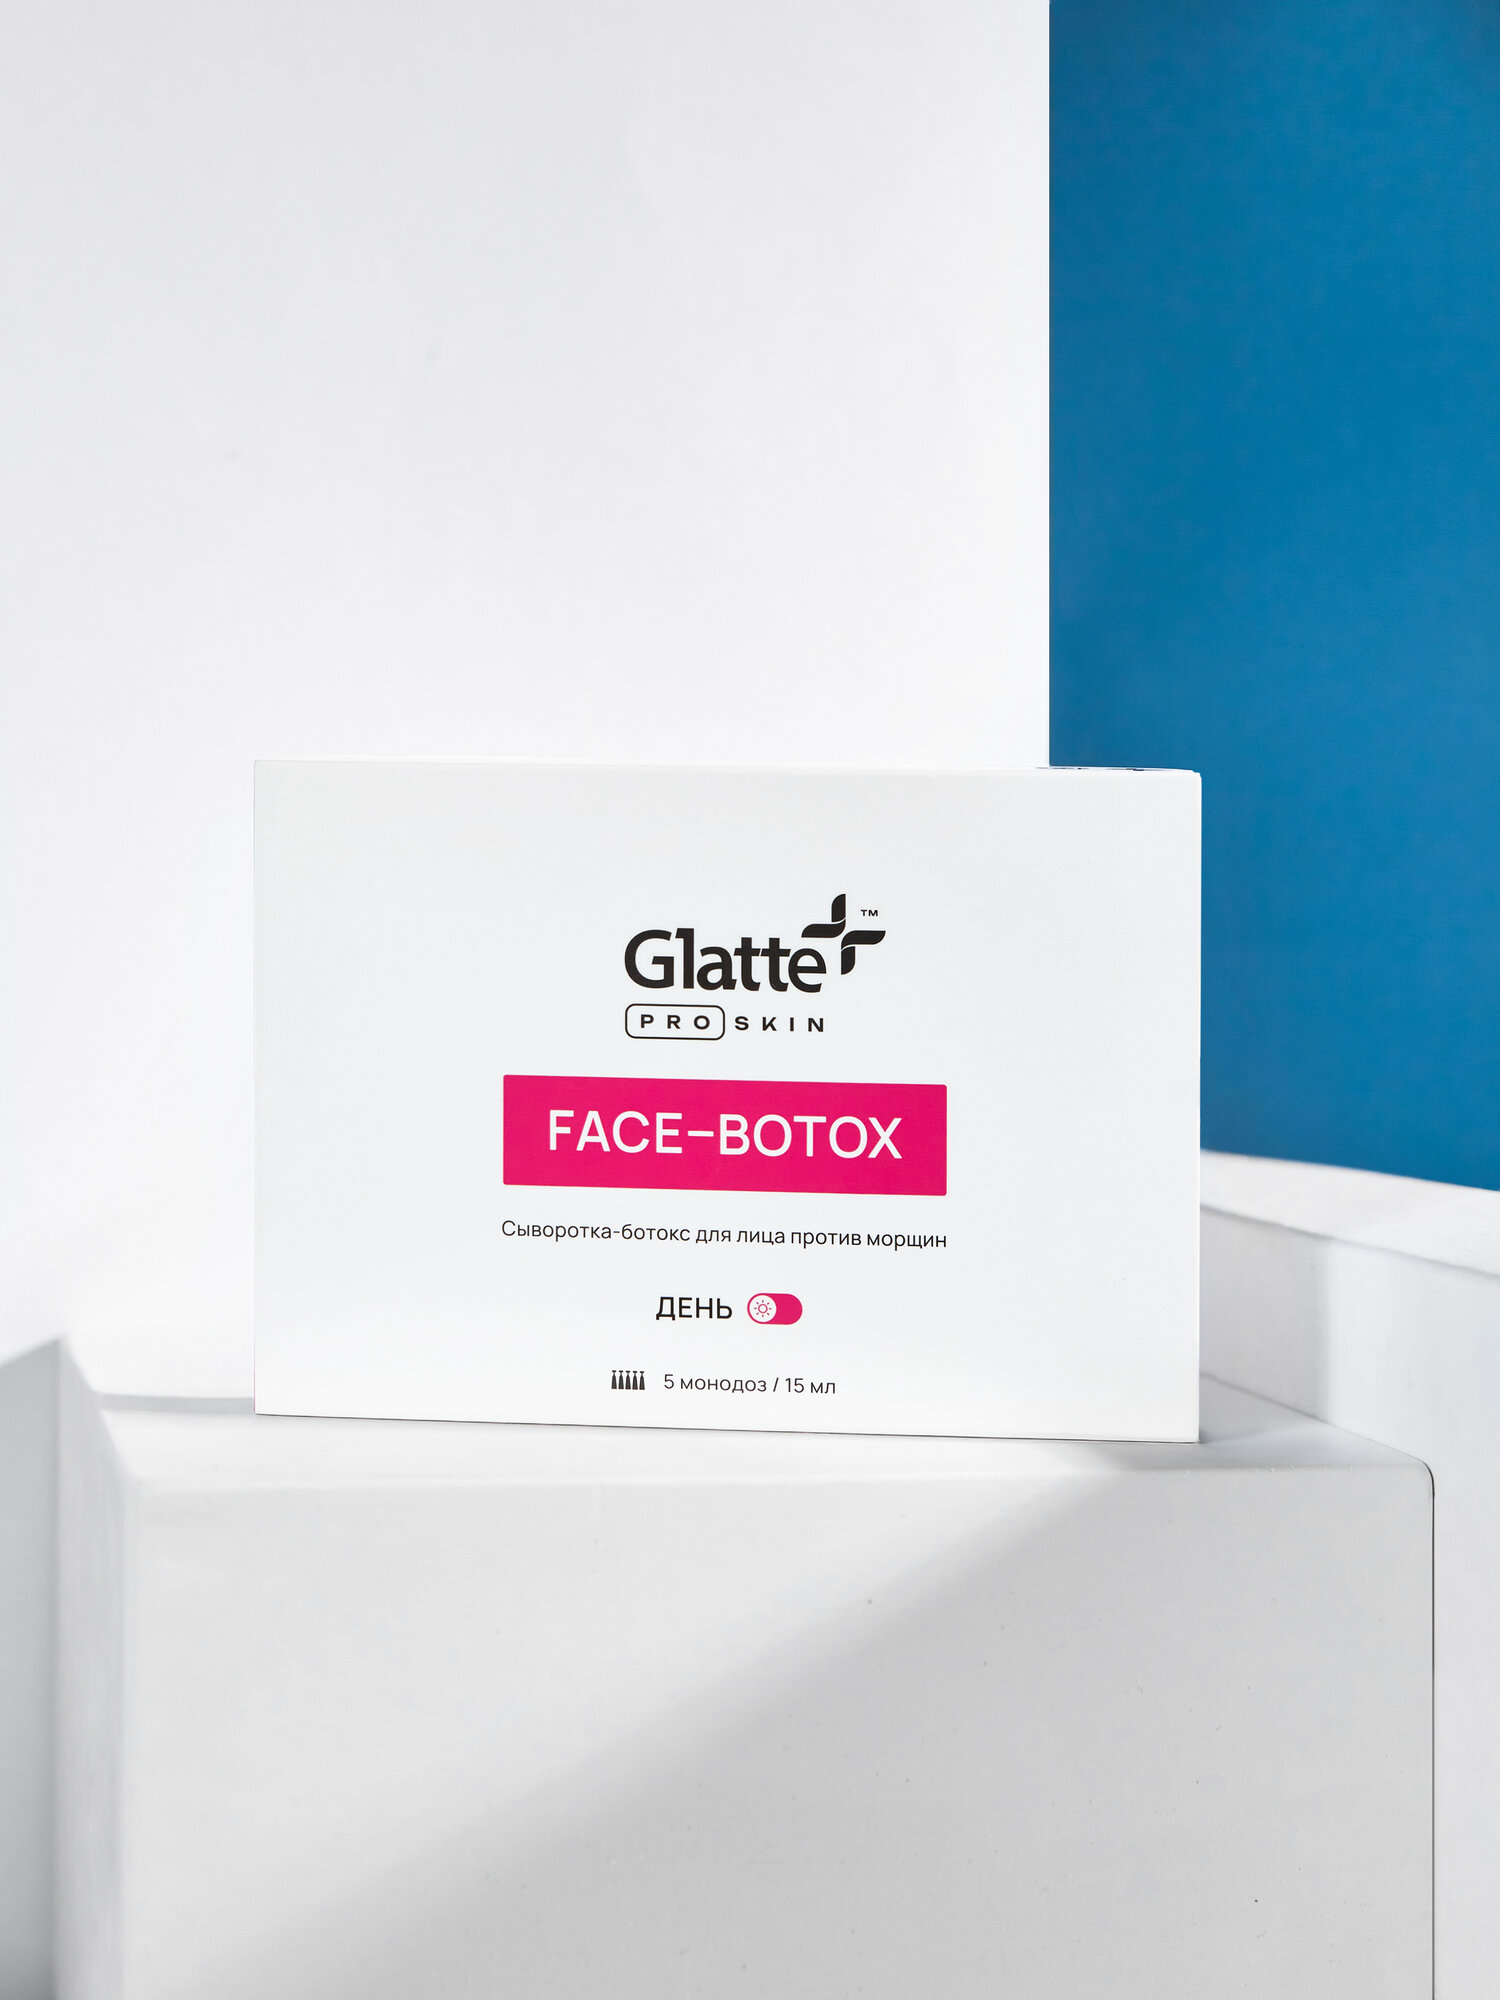 Сыворотка для лица Glatte антивозрастная дневная oт морщин, ботокс эффект, 15 мл